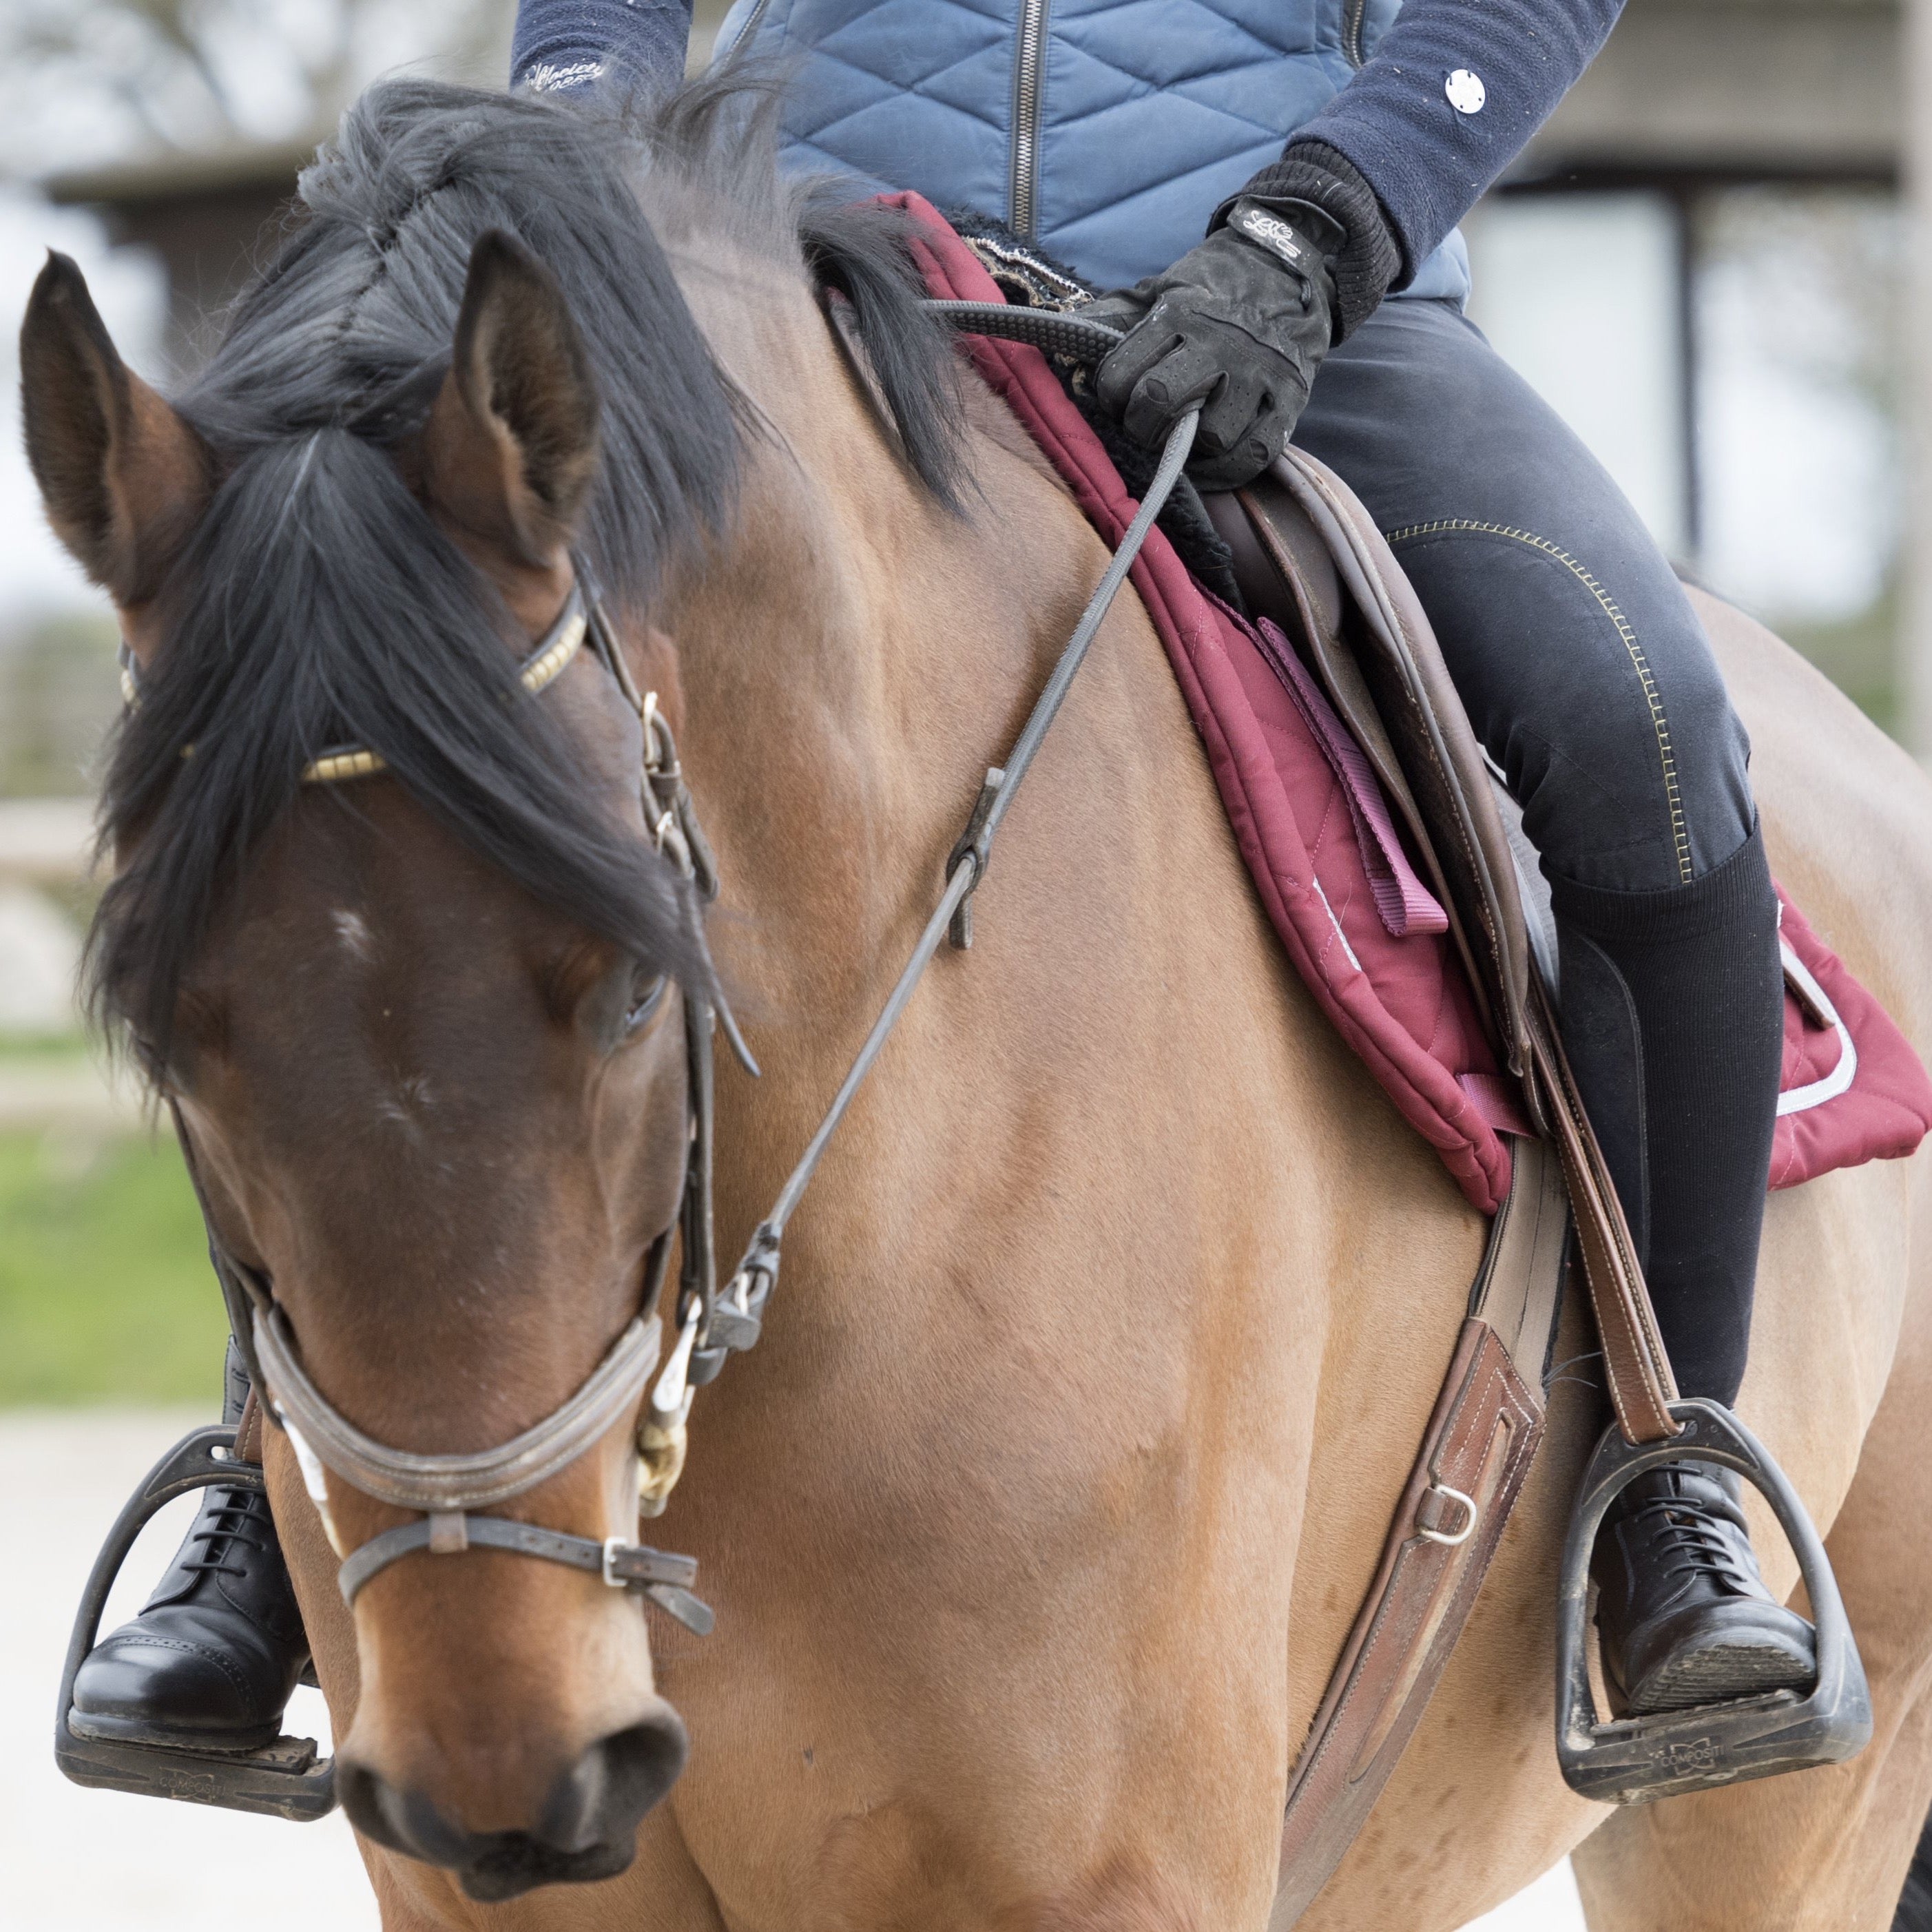 Les chaussettes d'équitation Fixity permettent de monter à cheval sans chaps et protègent l'intérieur du mollet du pincement de l'étrivière.